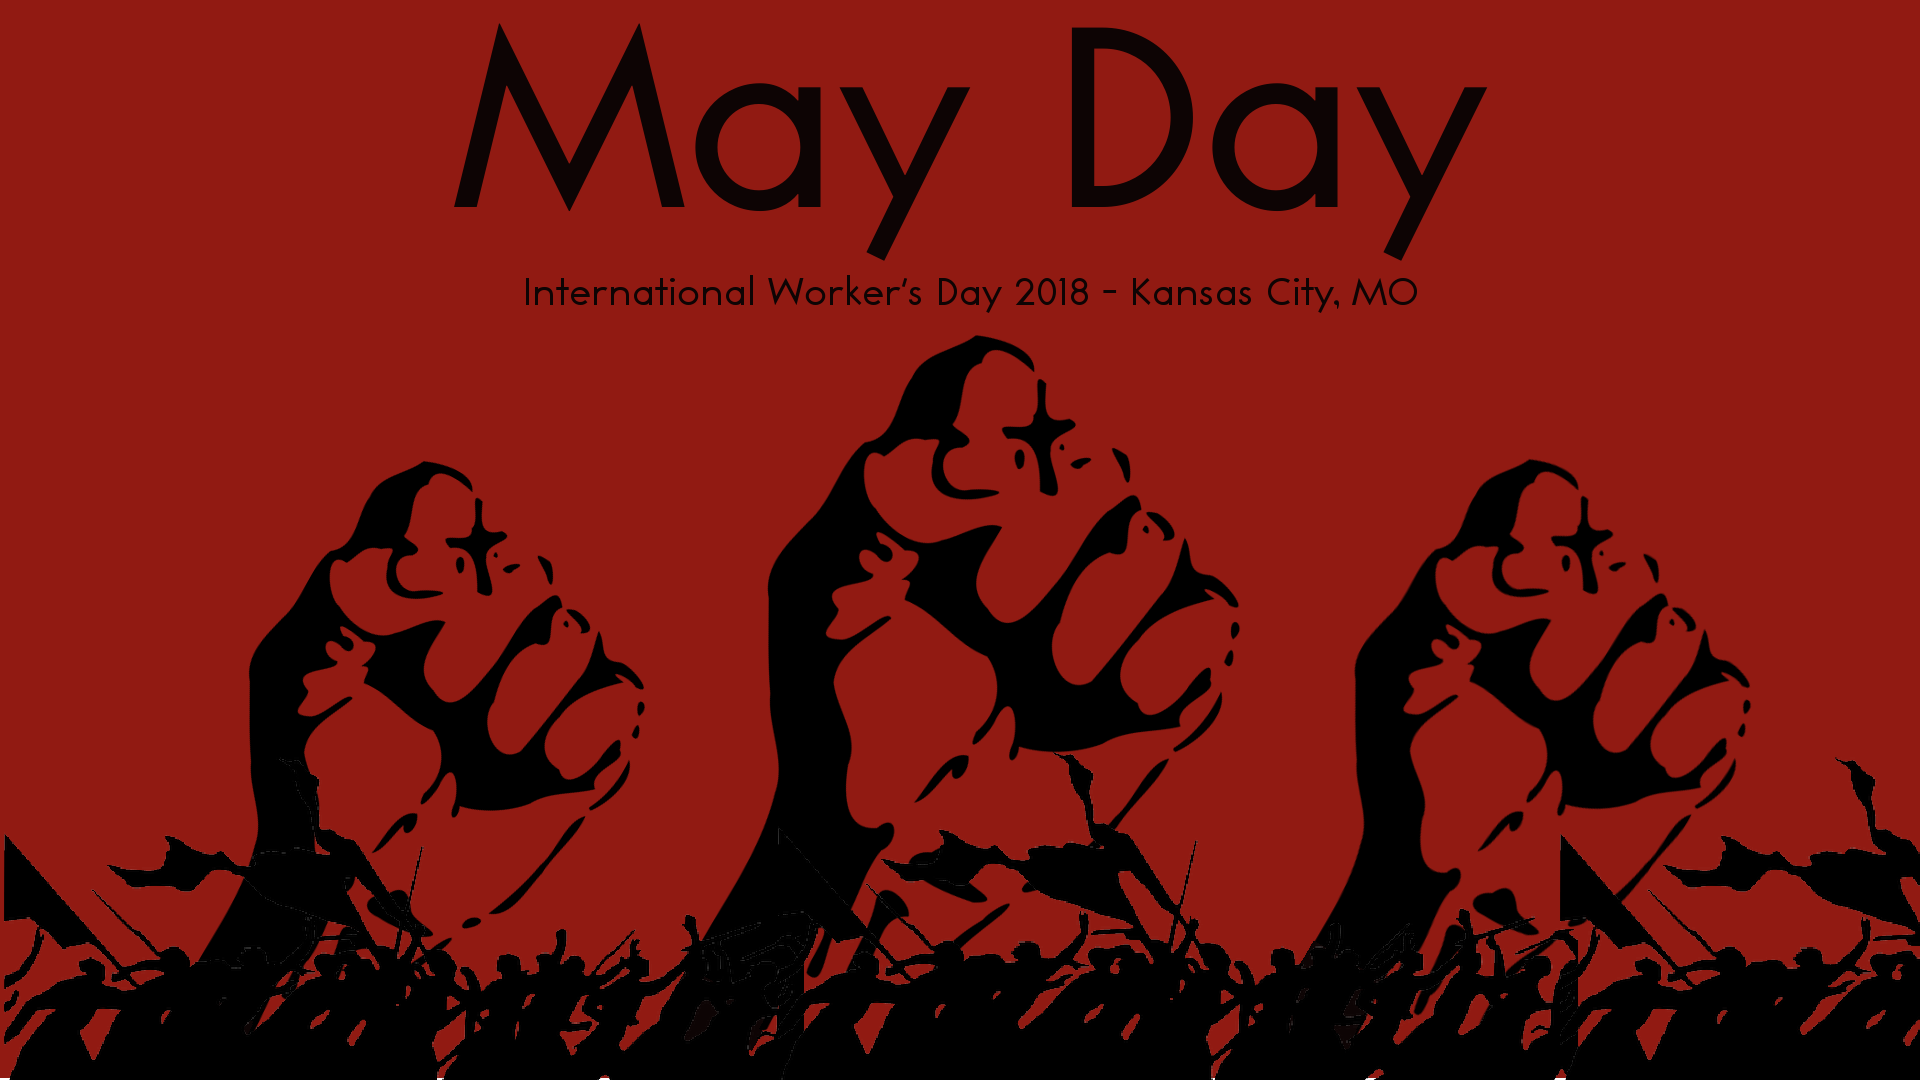 May day when. International May Day. 1 May International Day. May Day (May 1). 1 May workers Day.